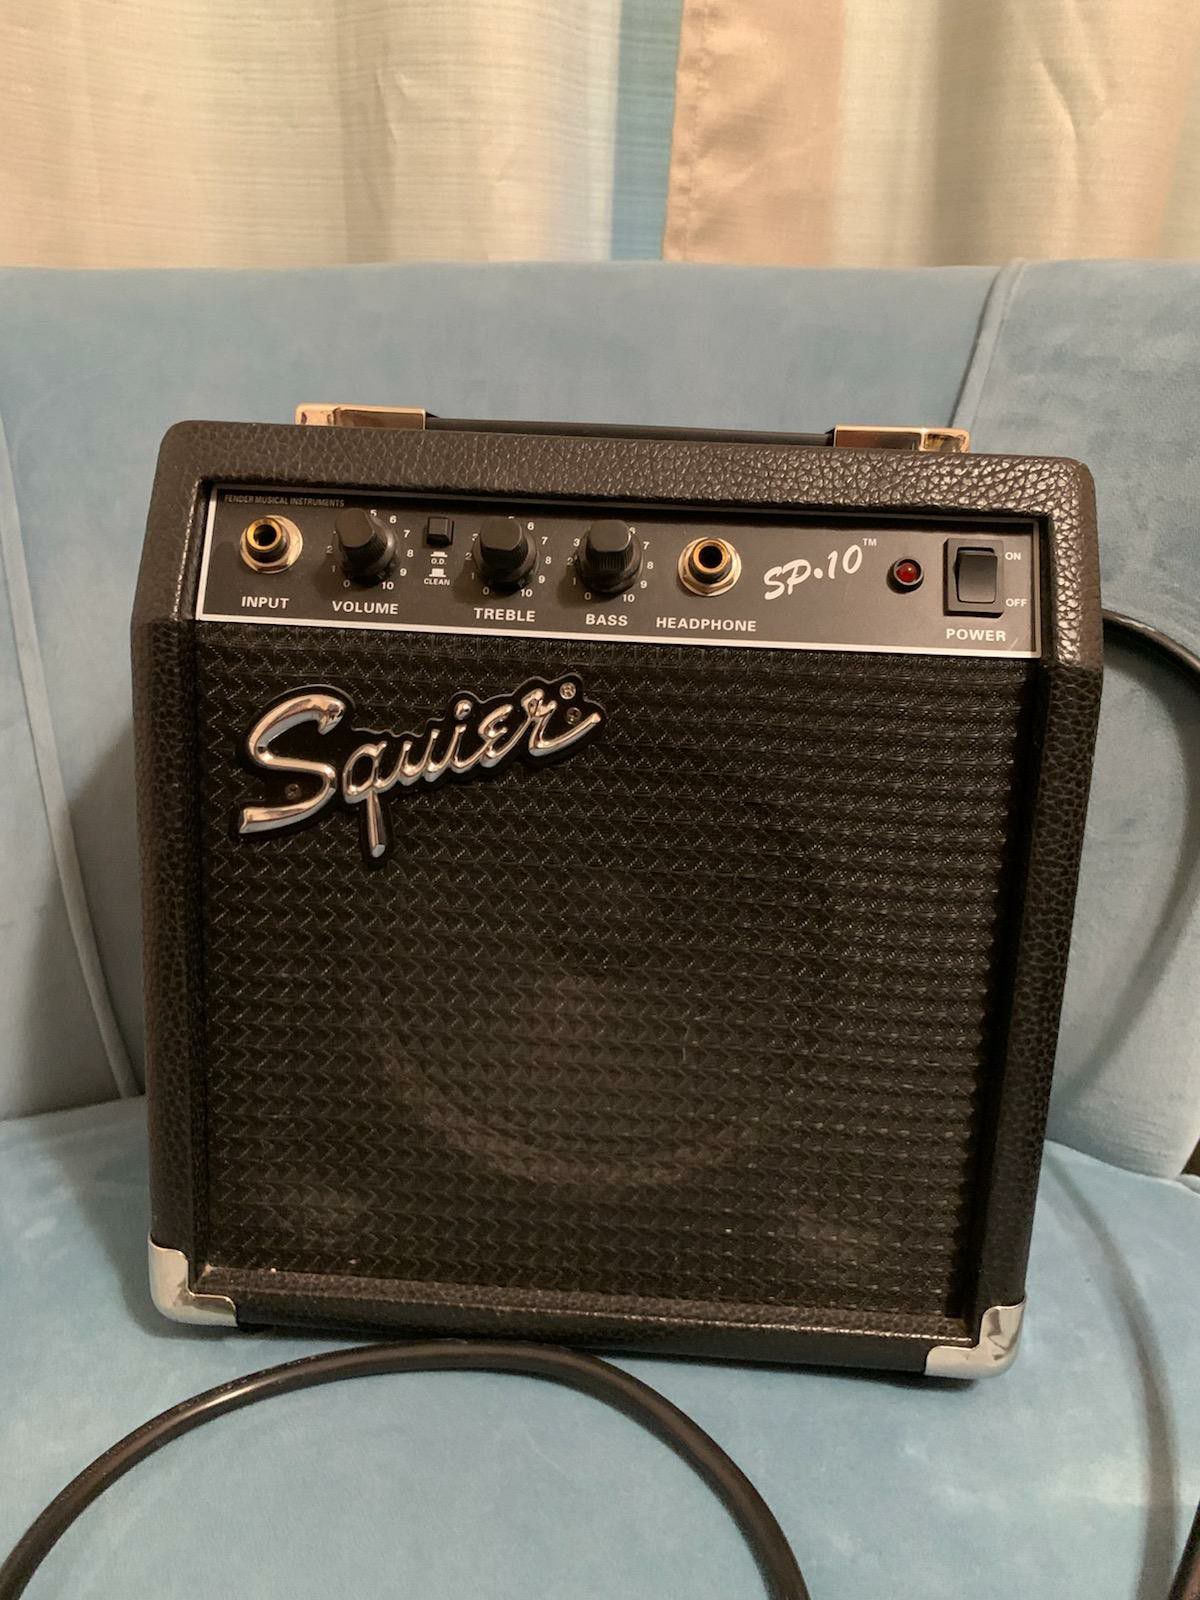 Fender Squire SP.10 guitar amp